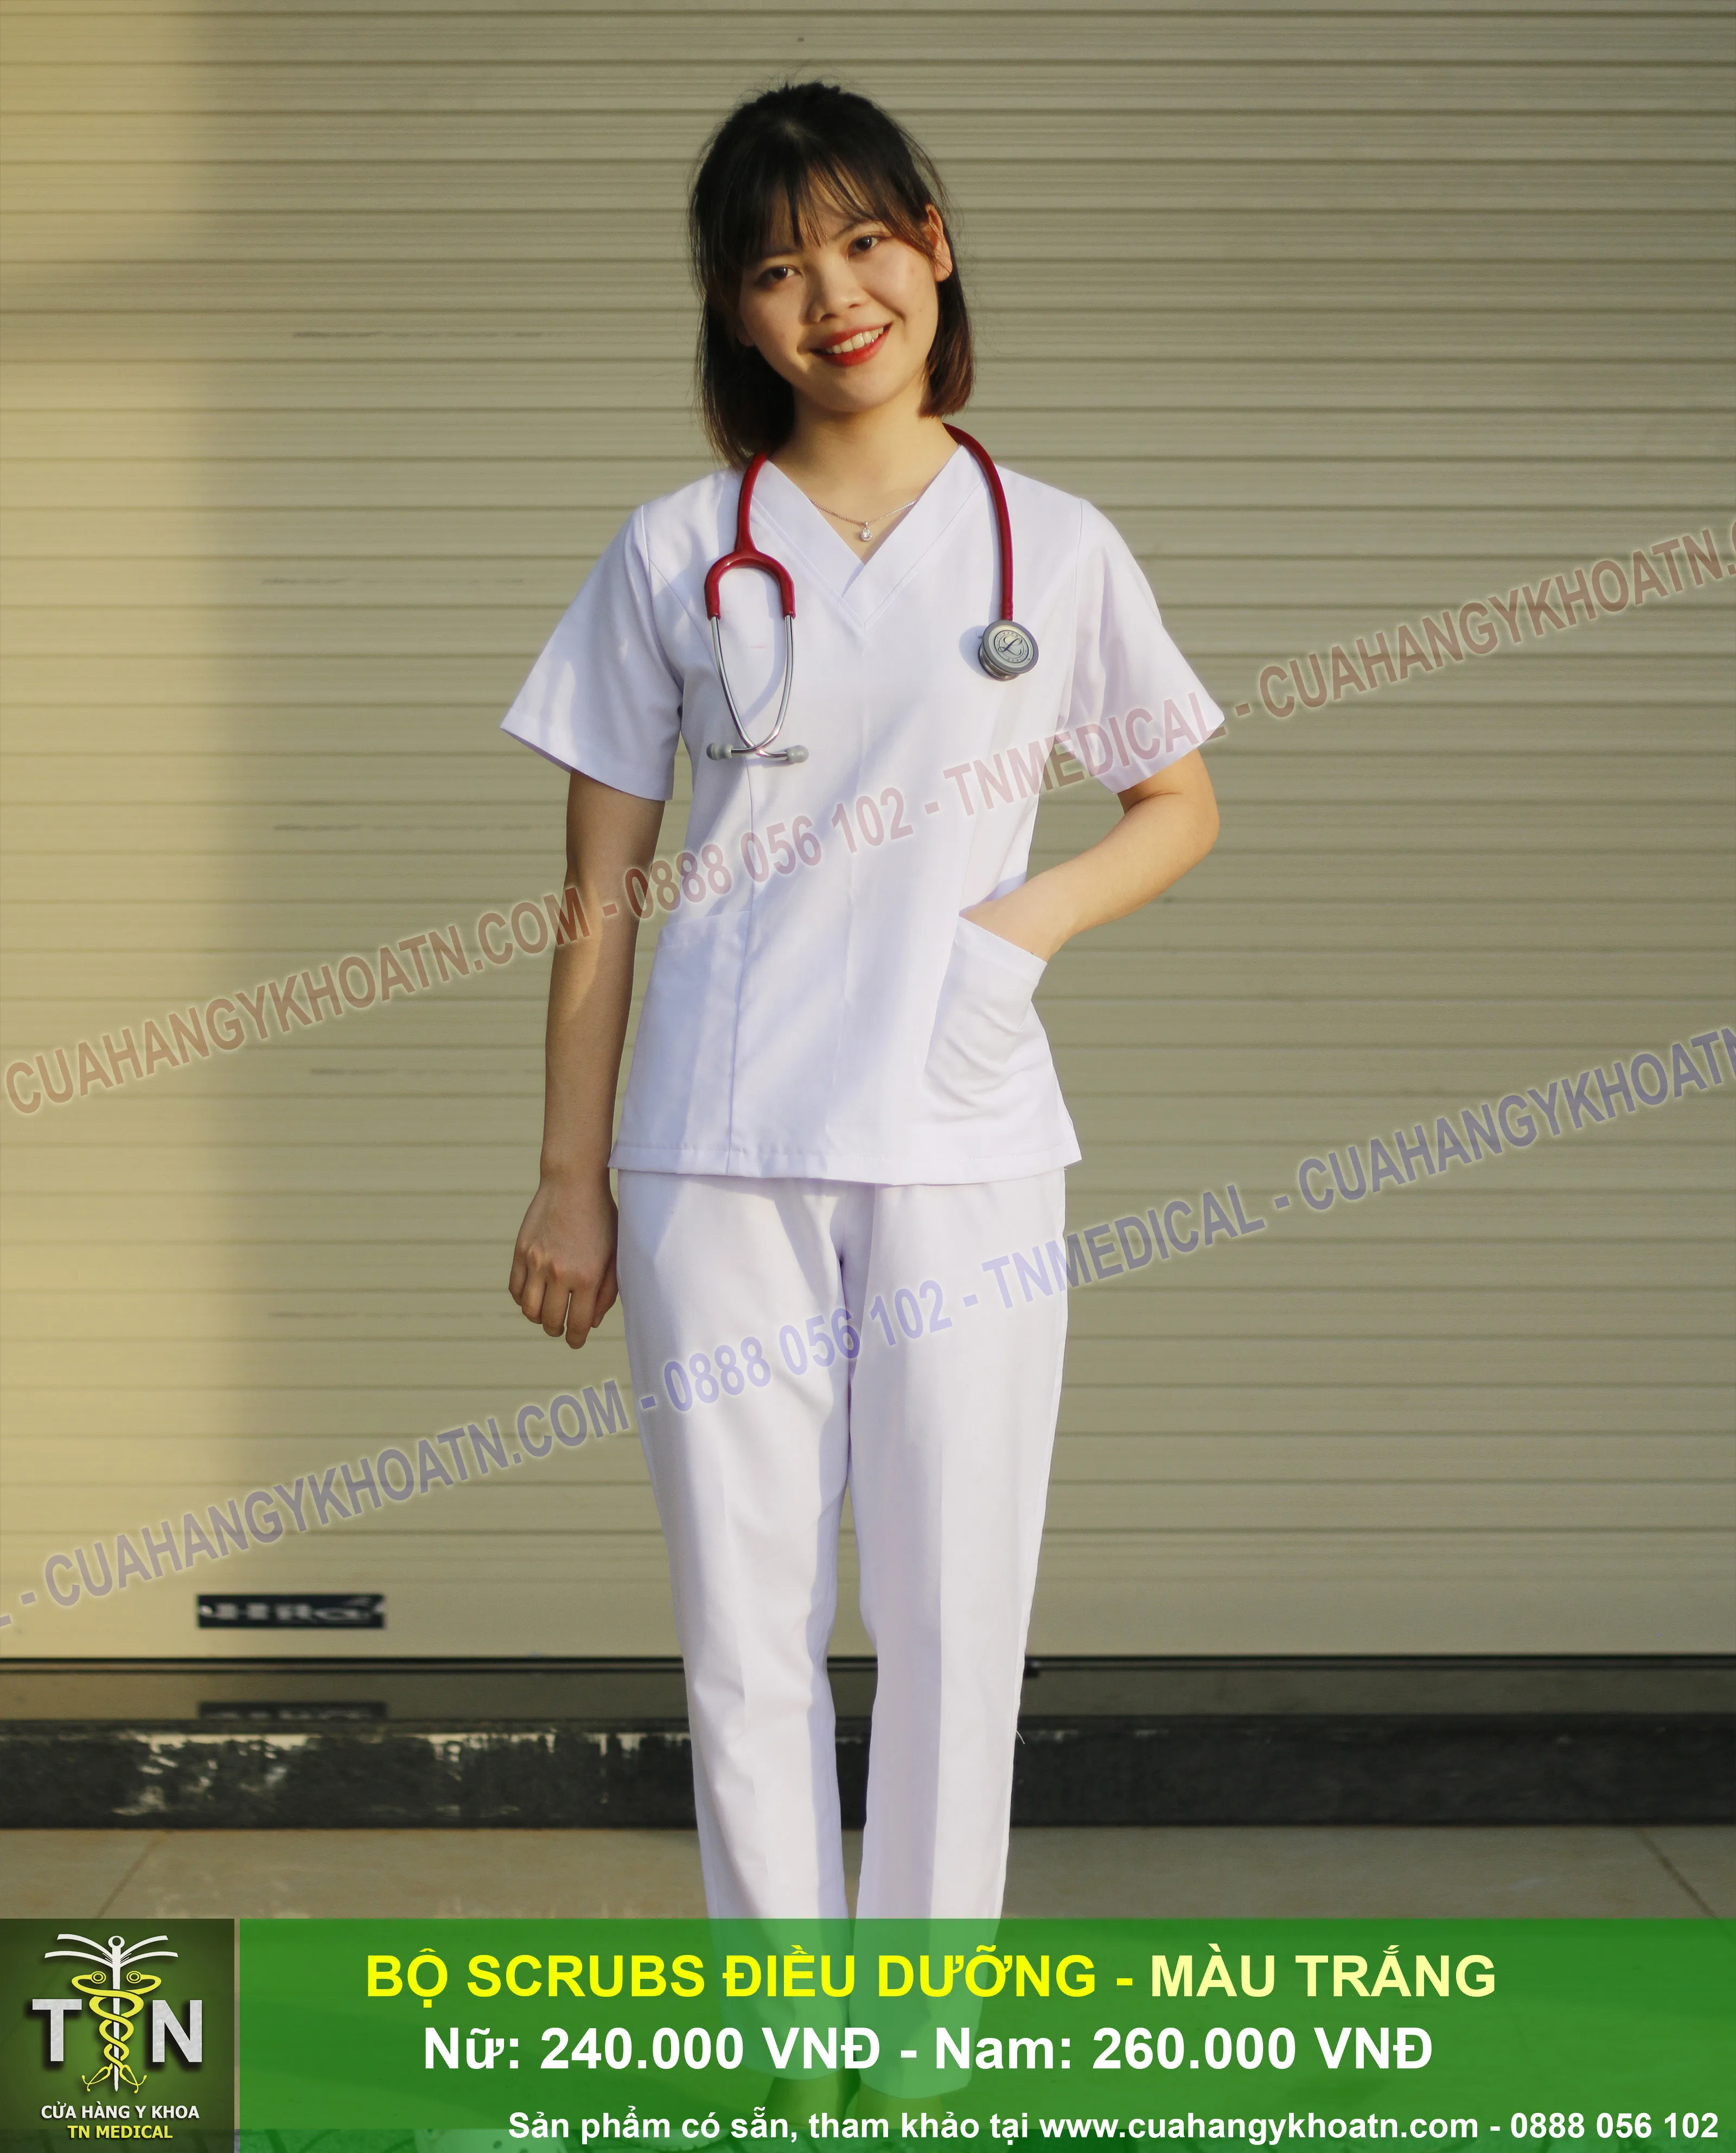 Bộ Scrubs Bác Sĩ Trung Cấp - Thương hiệu TN Medical